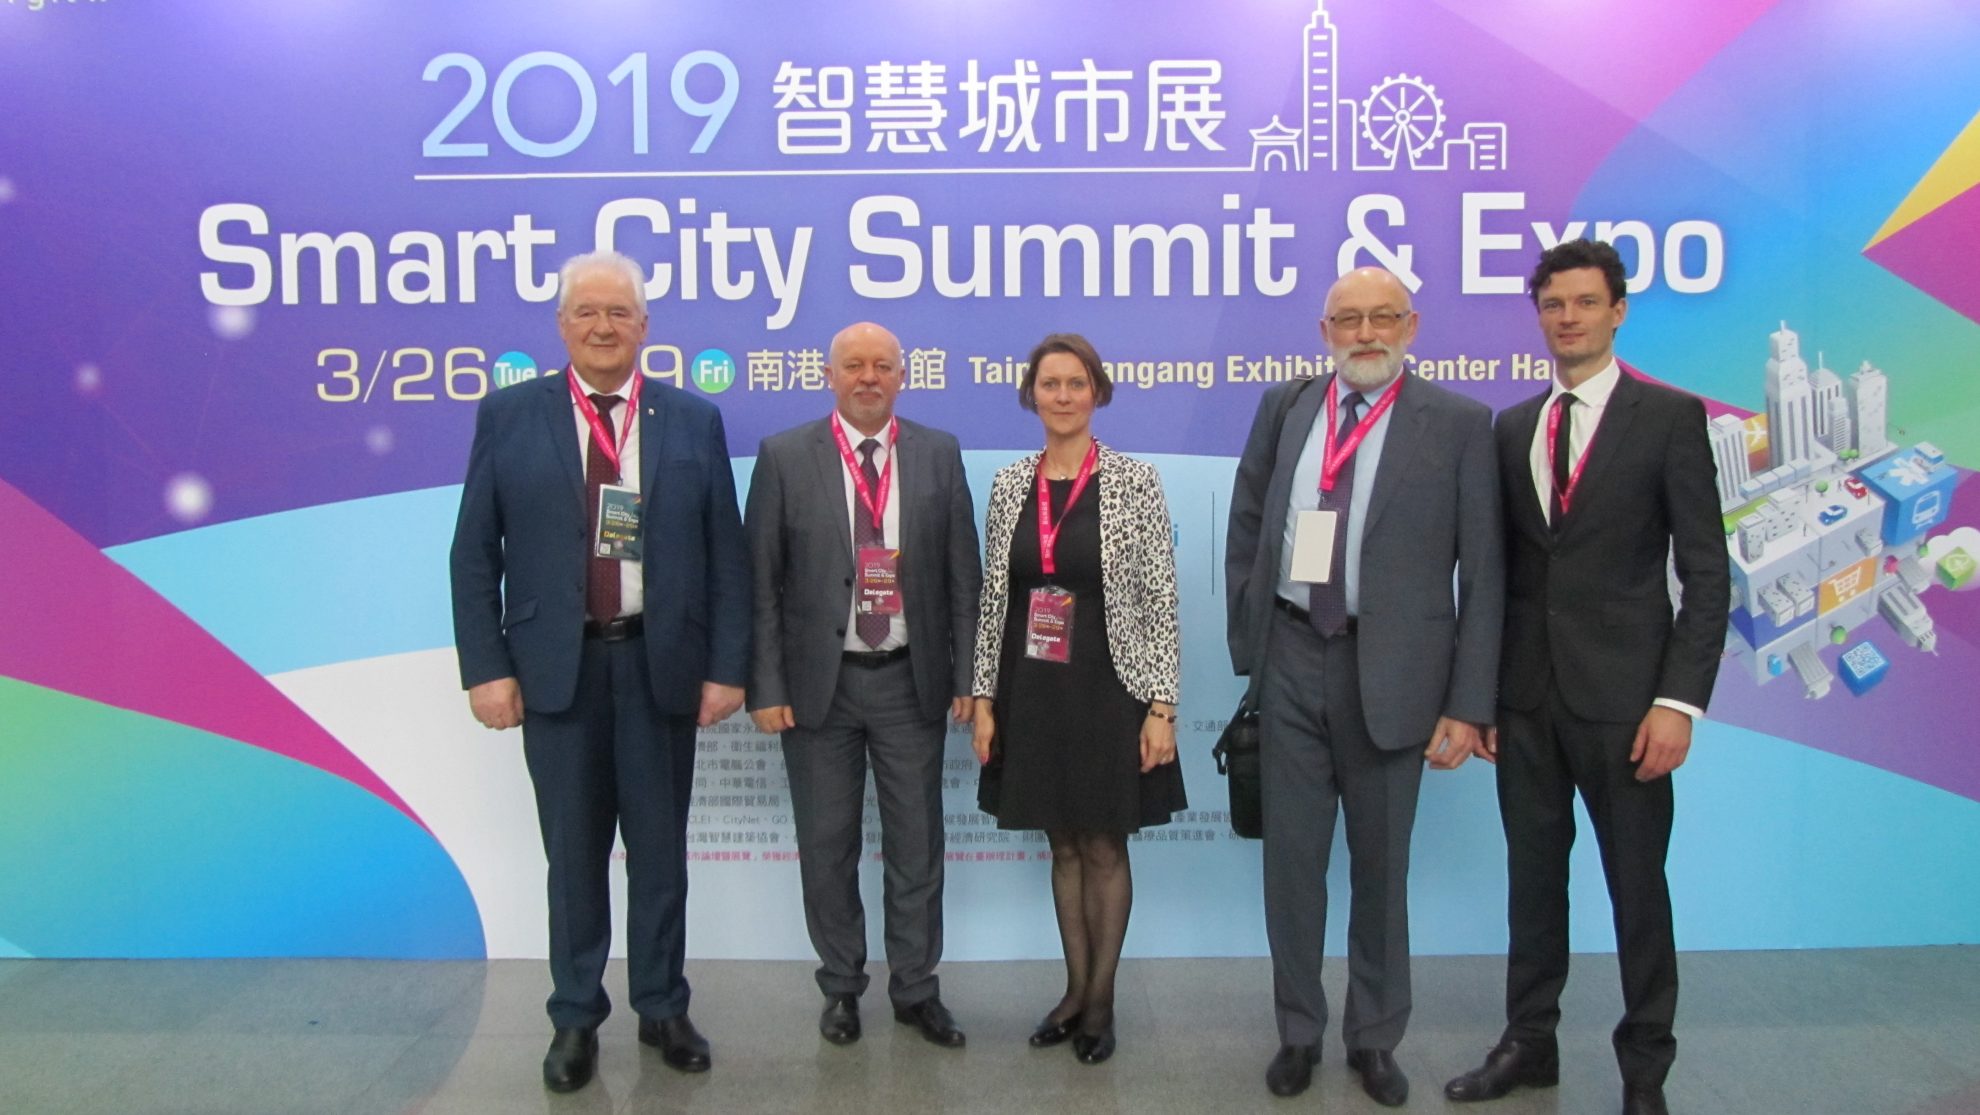 Taipėjaus misijos Baltijos šalims ambasadoriaus J. E. p. Andy Chin kvietimu Panevėžio miesto delegacija dalyvavo „Išmaniųjų miestų susitikimo ir EXPO“ renginyje Taipėjuje.